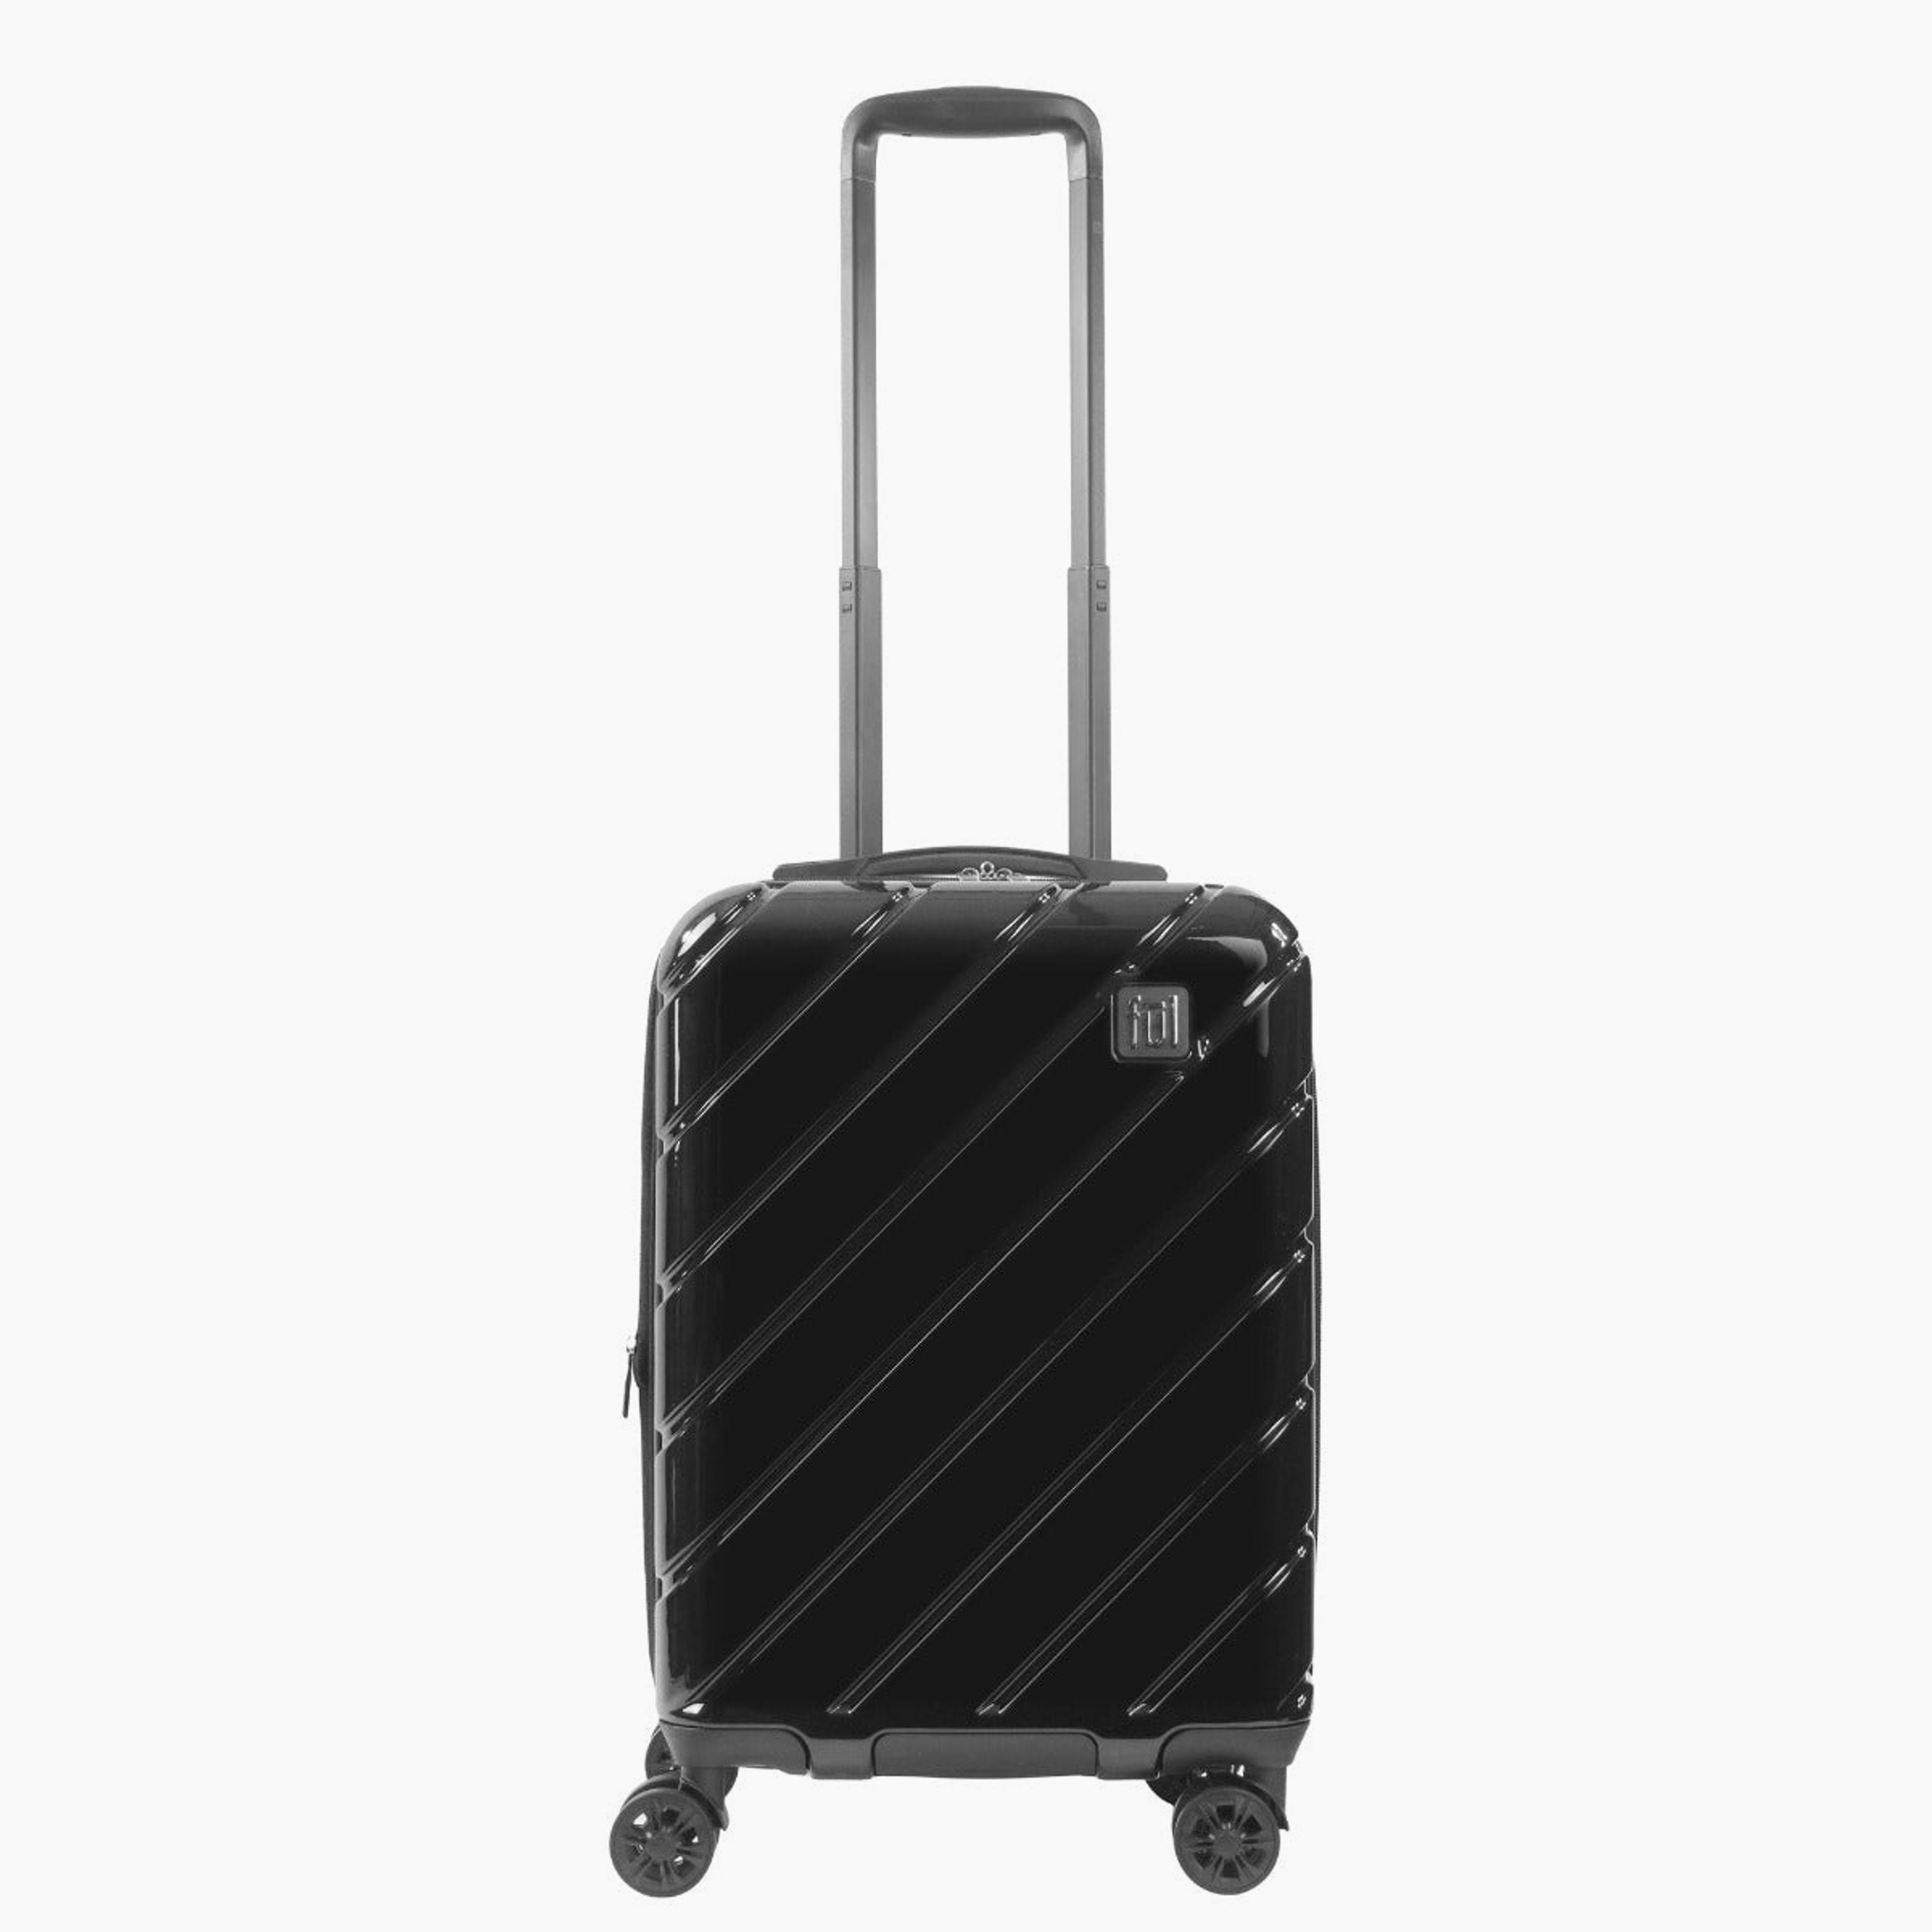 Ful Velocity 22" Expandable Hardside Spinner Luggage, Black